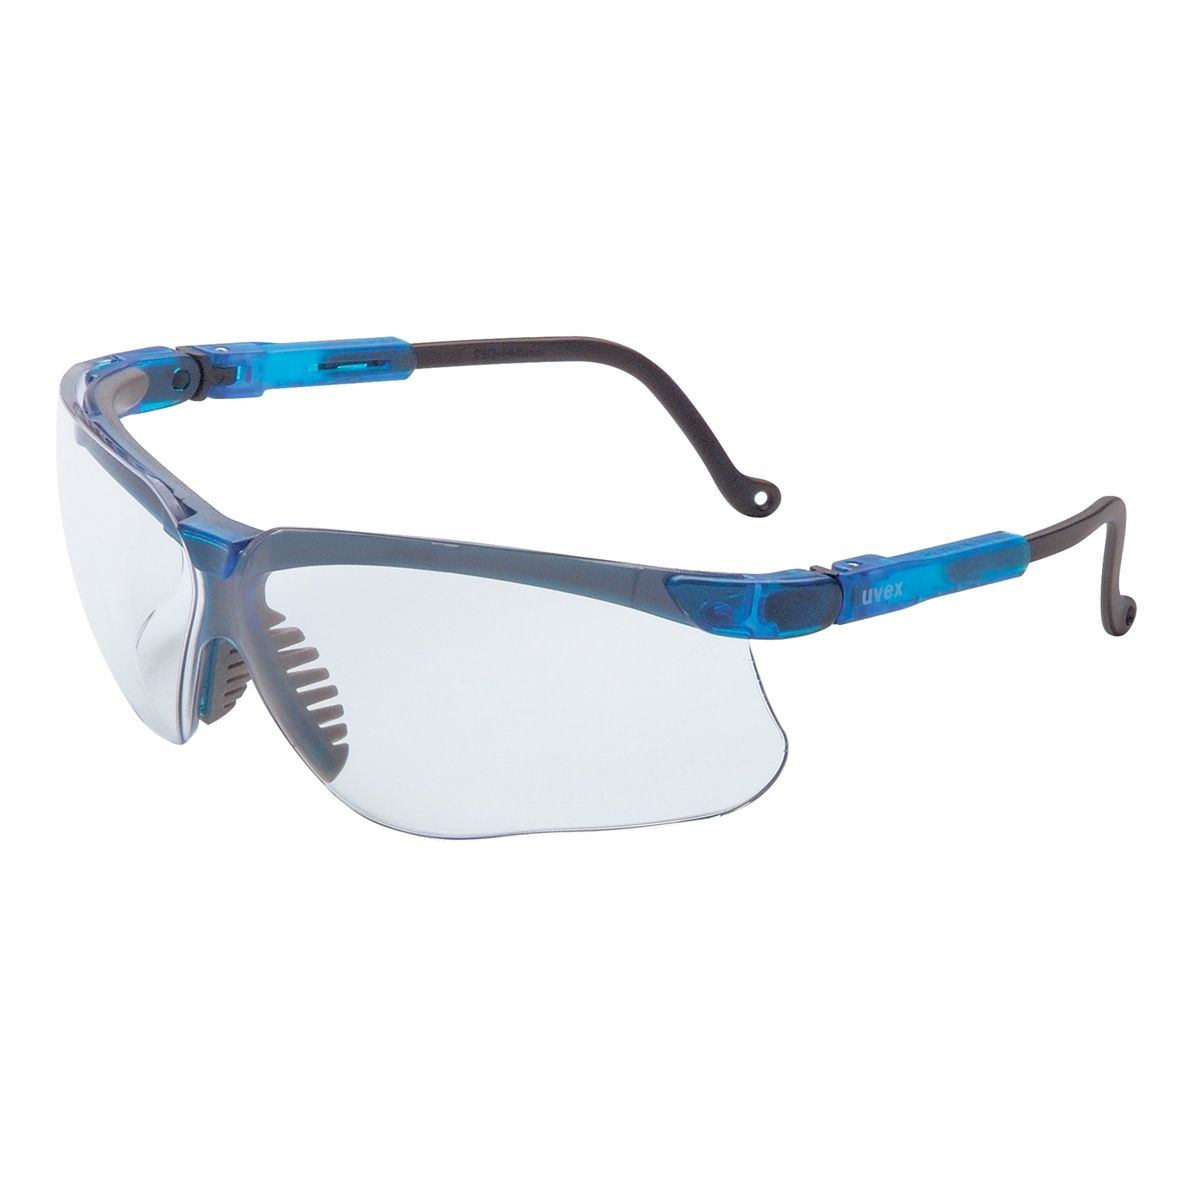 Genesis Glasses - Blue Frame / Clear Lens w/ Anti-Fog Coating